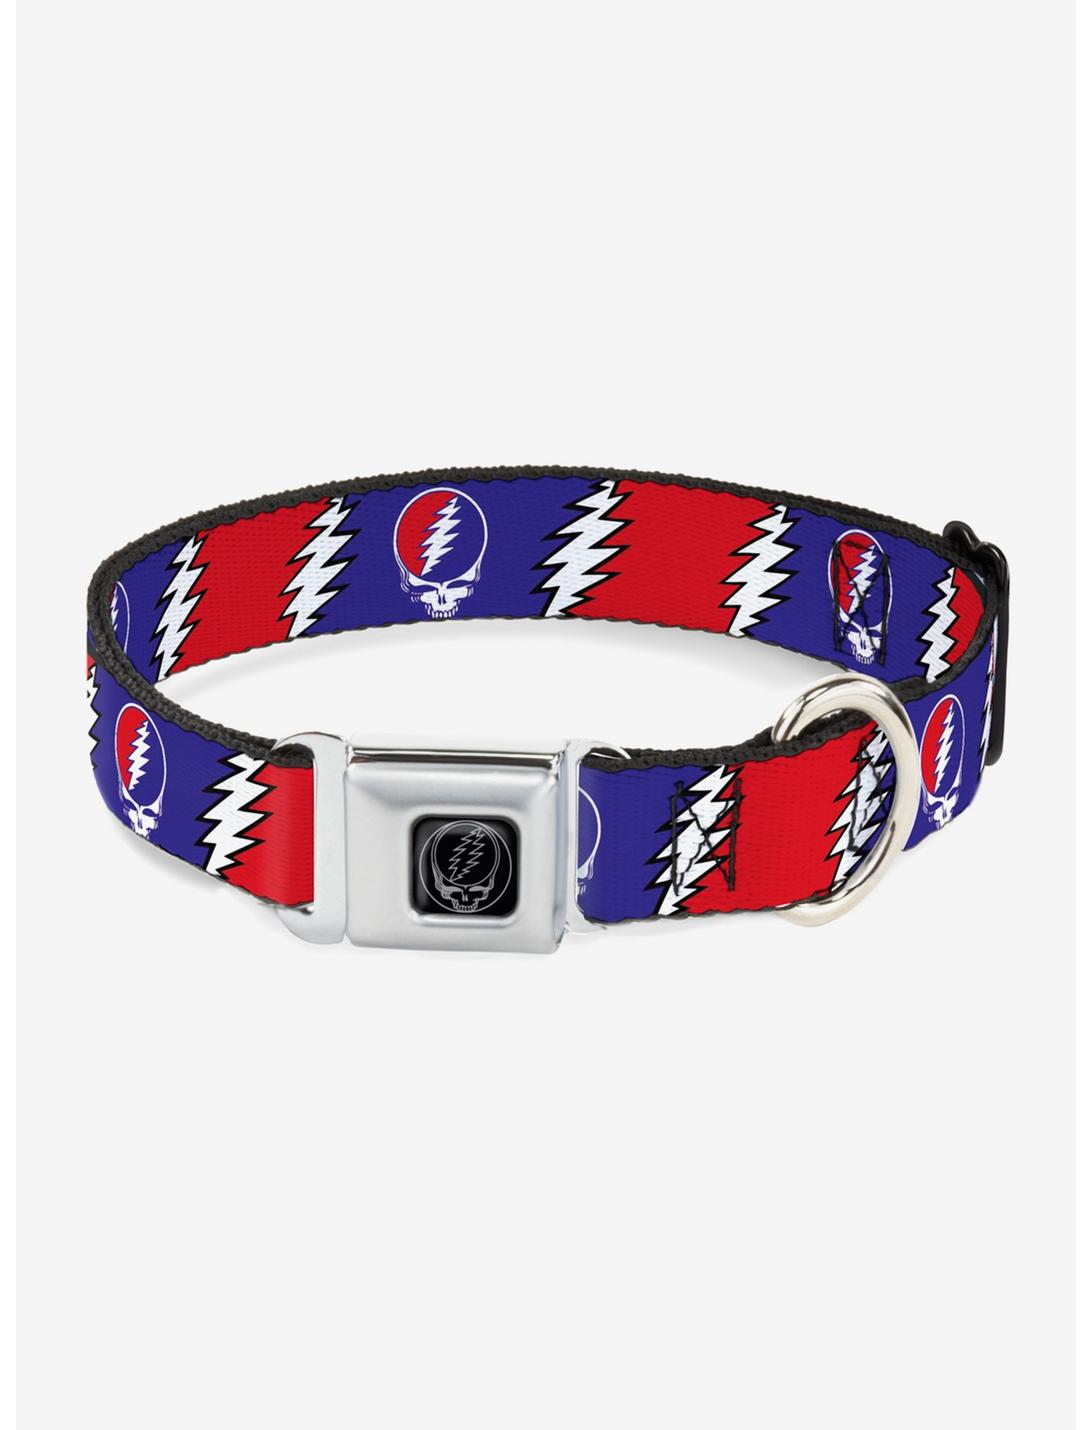 Grateful Dead Steal Your Face Lightning Bolt Seatbelt Buckle Dog Collar, RED, hi-res